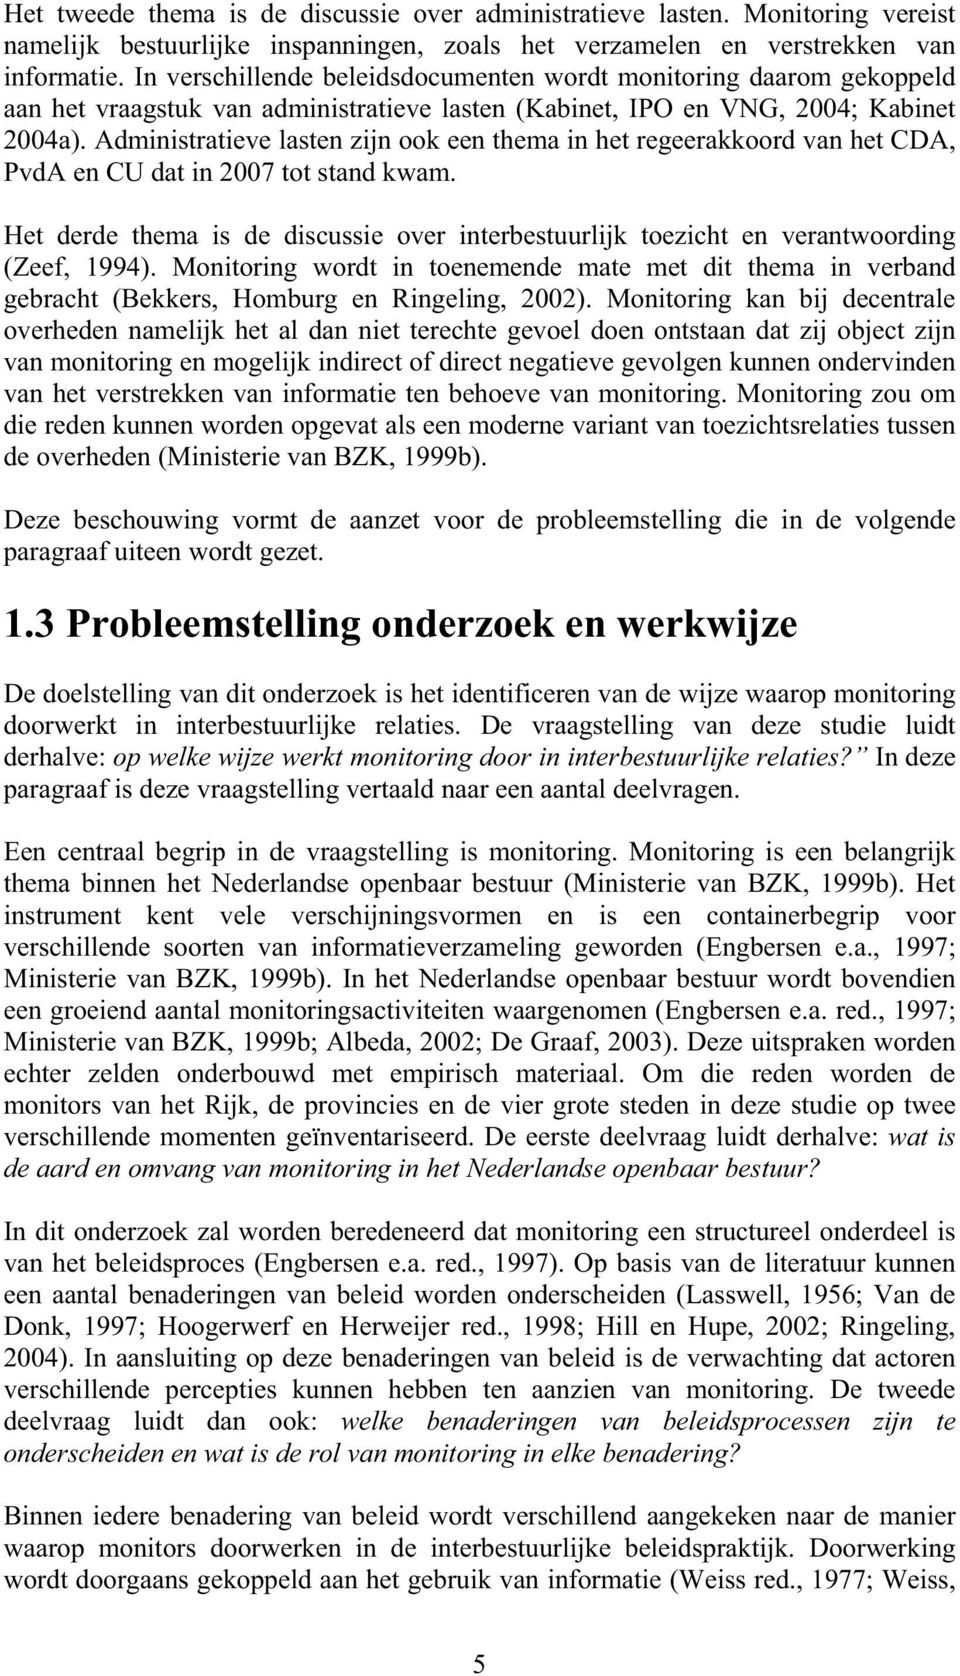 Administratieve lasten zijn ook een thema in het regeerakkoord van het CDA, PvdA en CU dat in 2007 tot stand kwam.